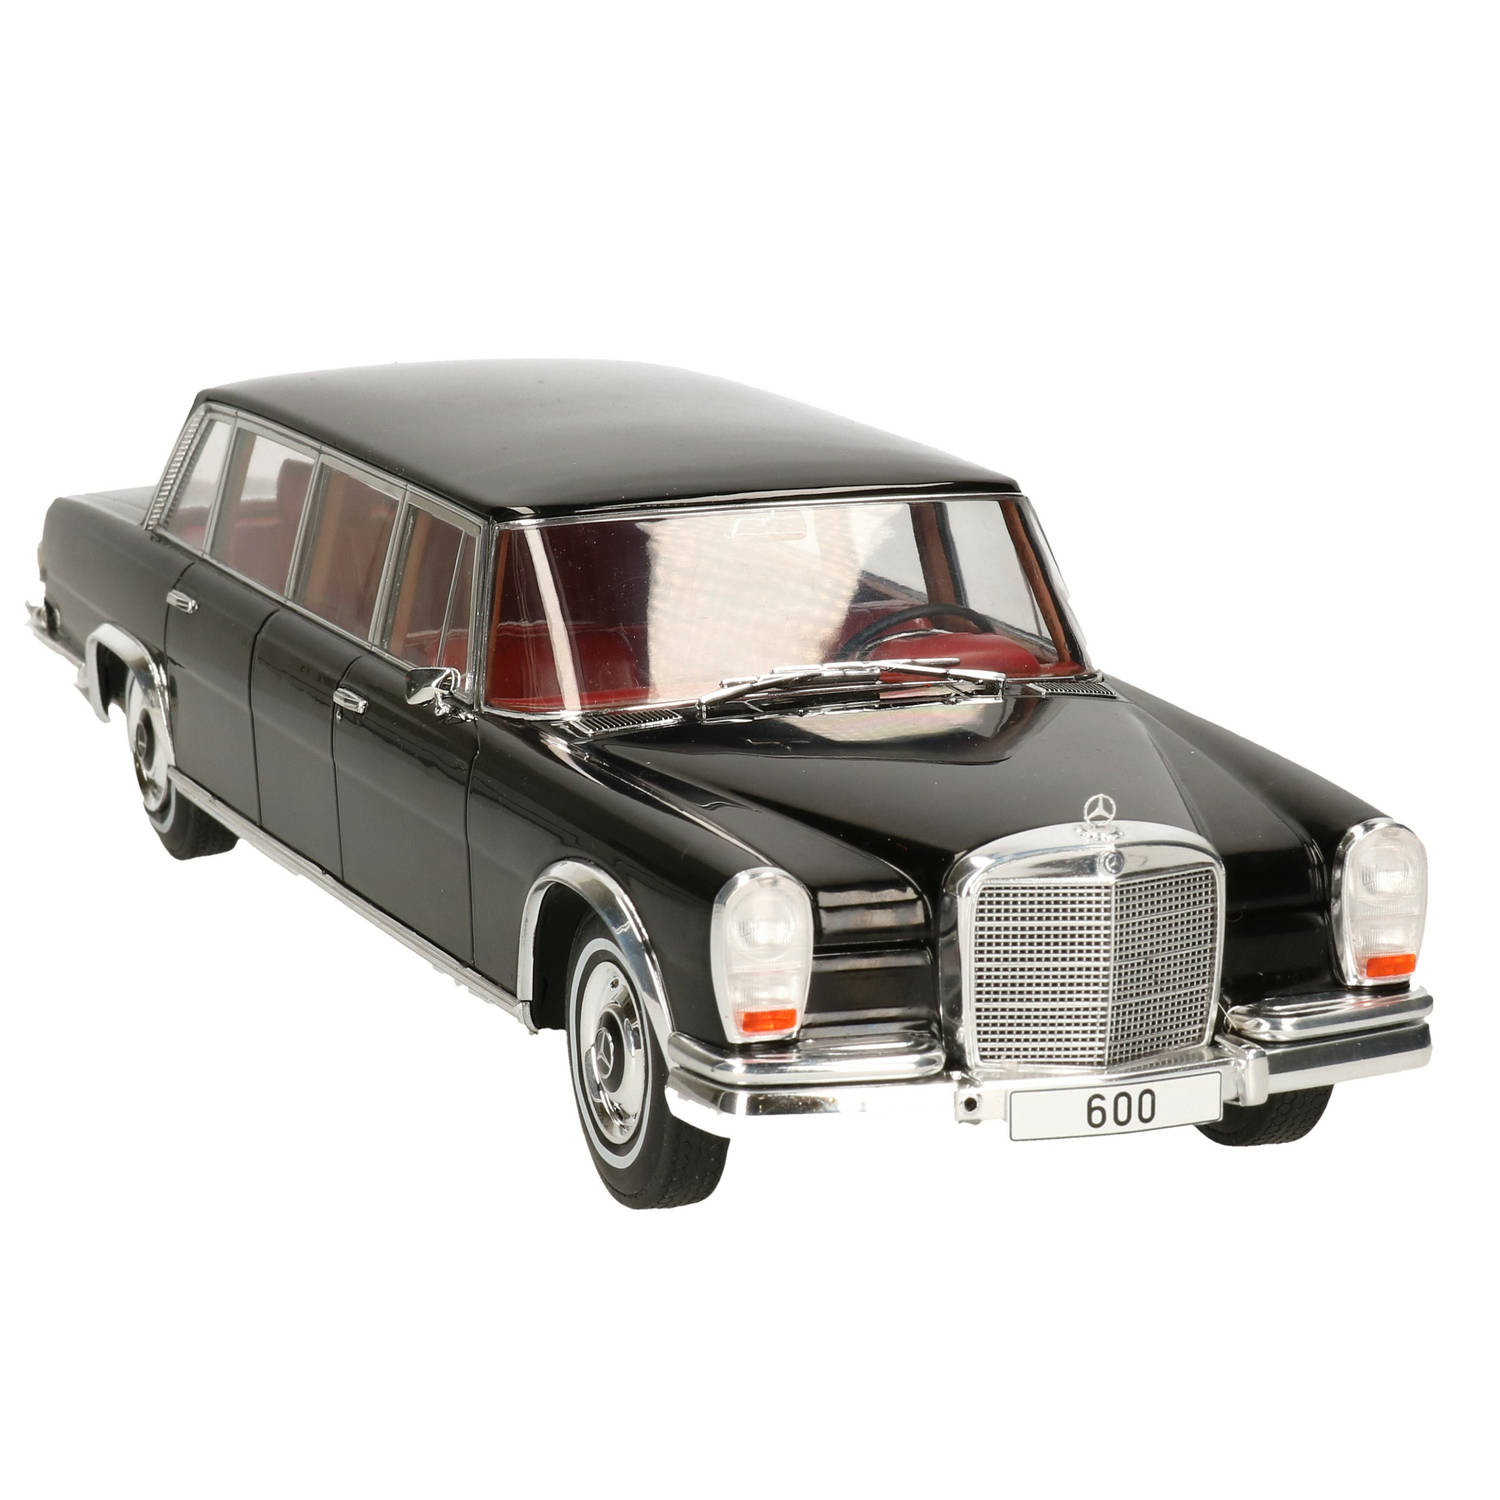 Modelauto-schaalmodel Mercedes-benz 600 1969 Schaal 1:18-34 X 11 X 8 Cm Speelgoed Auto's